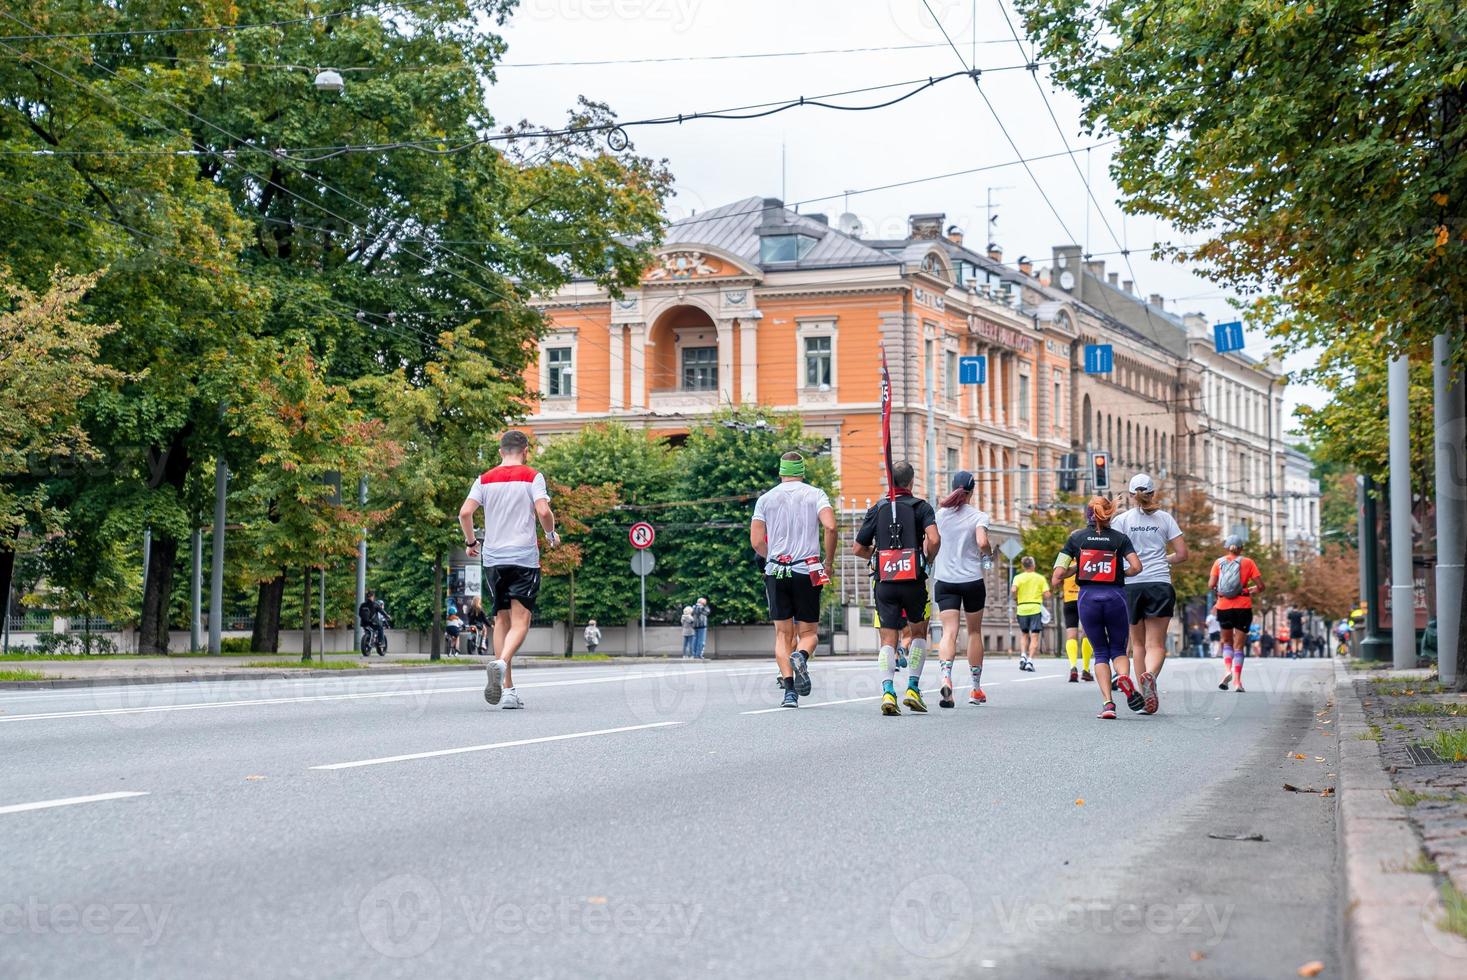 große gruppenmannläufer, die marathon laufen foto